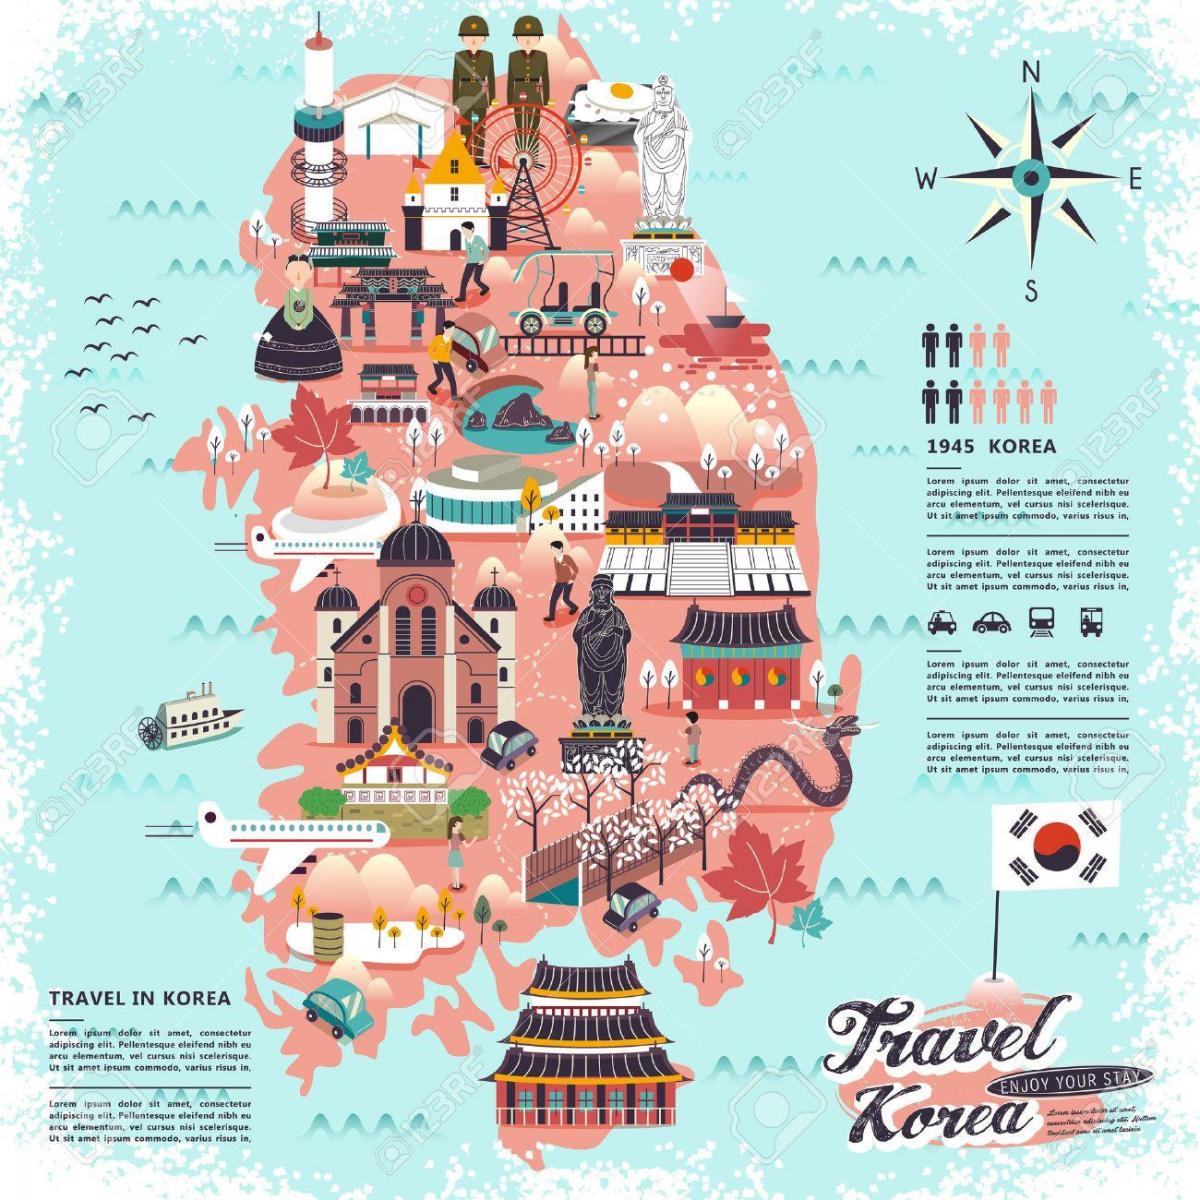 South Korea (ROK) travel map